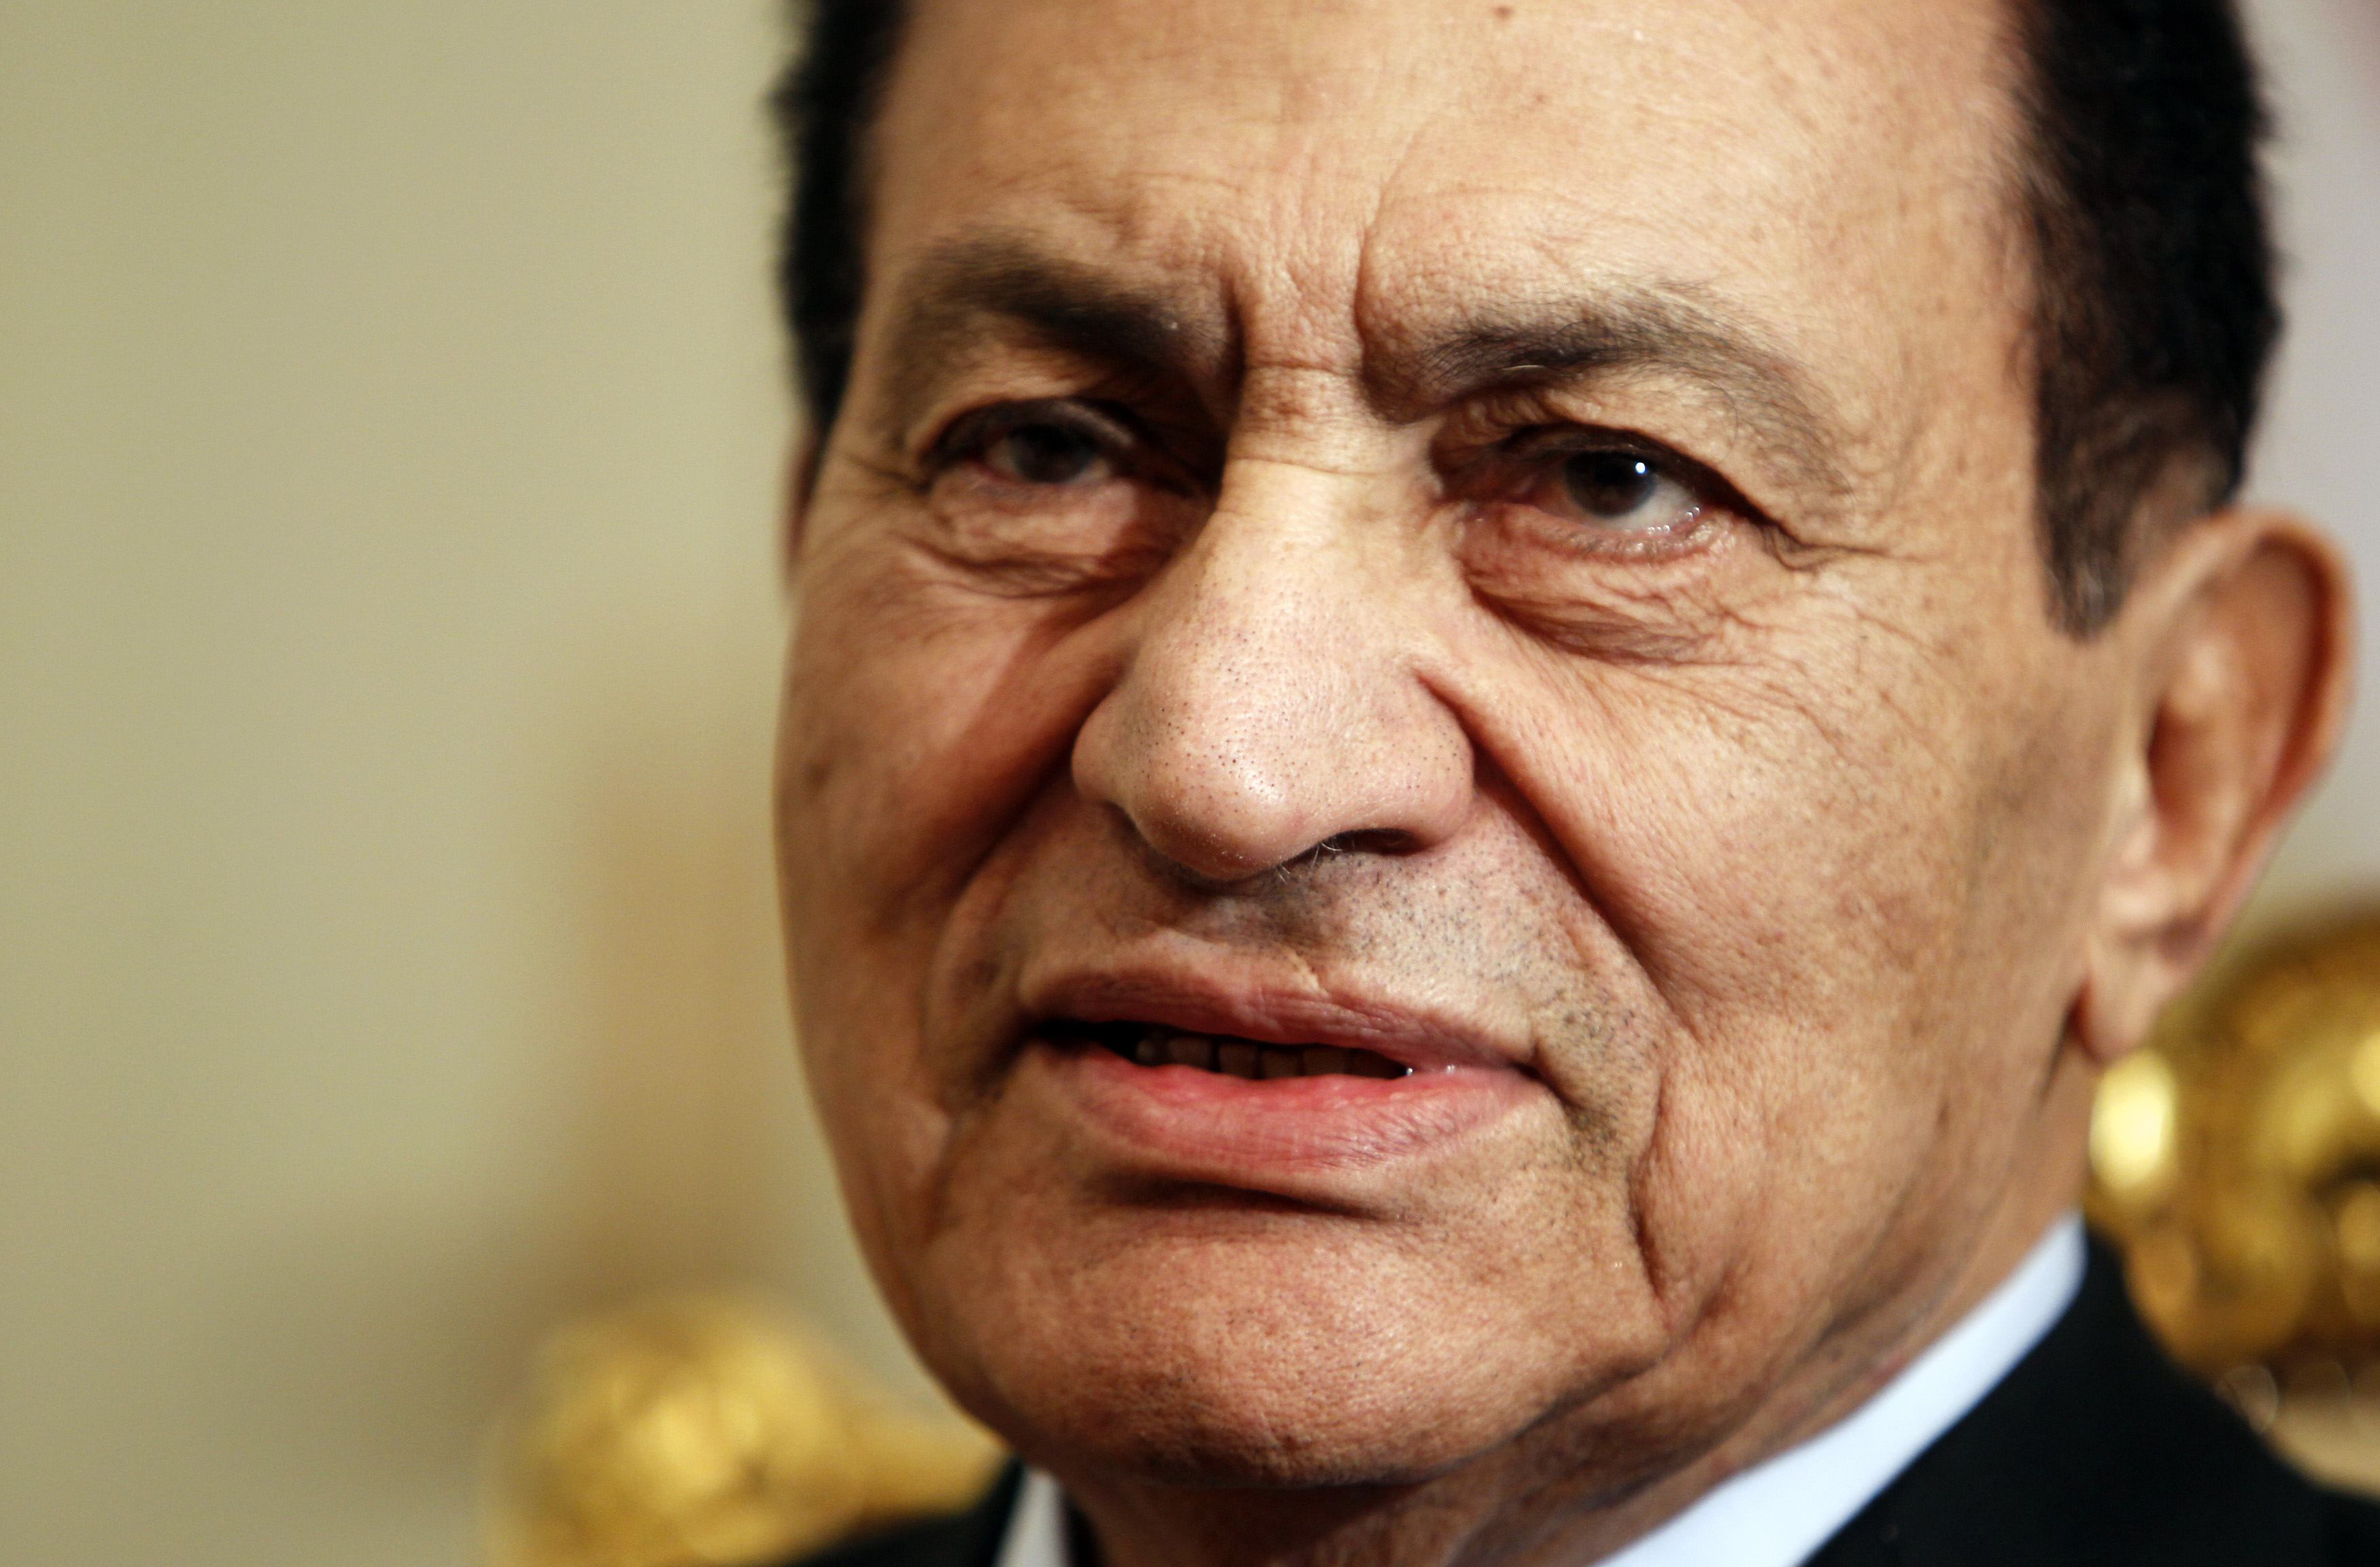 Πρόστιμο 90 εκατομμυρίων λιρών για τον Μουμπάρακ